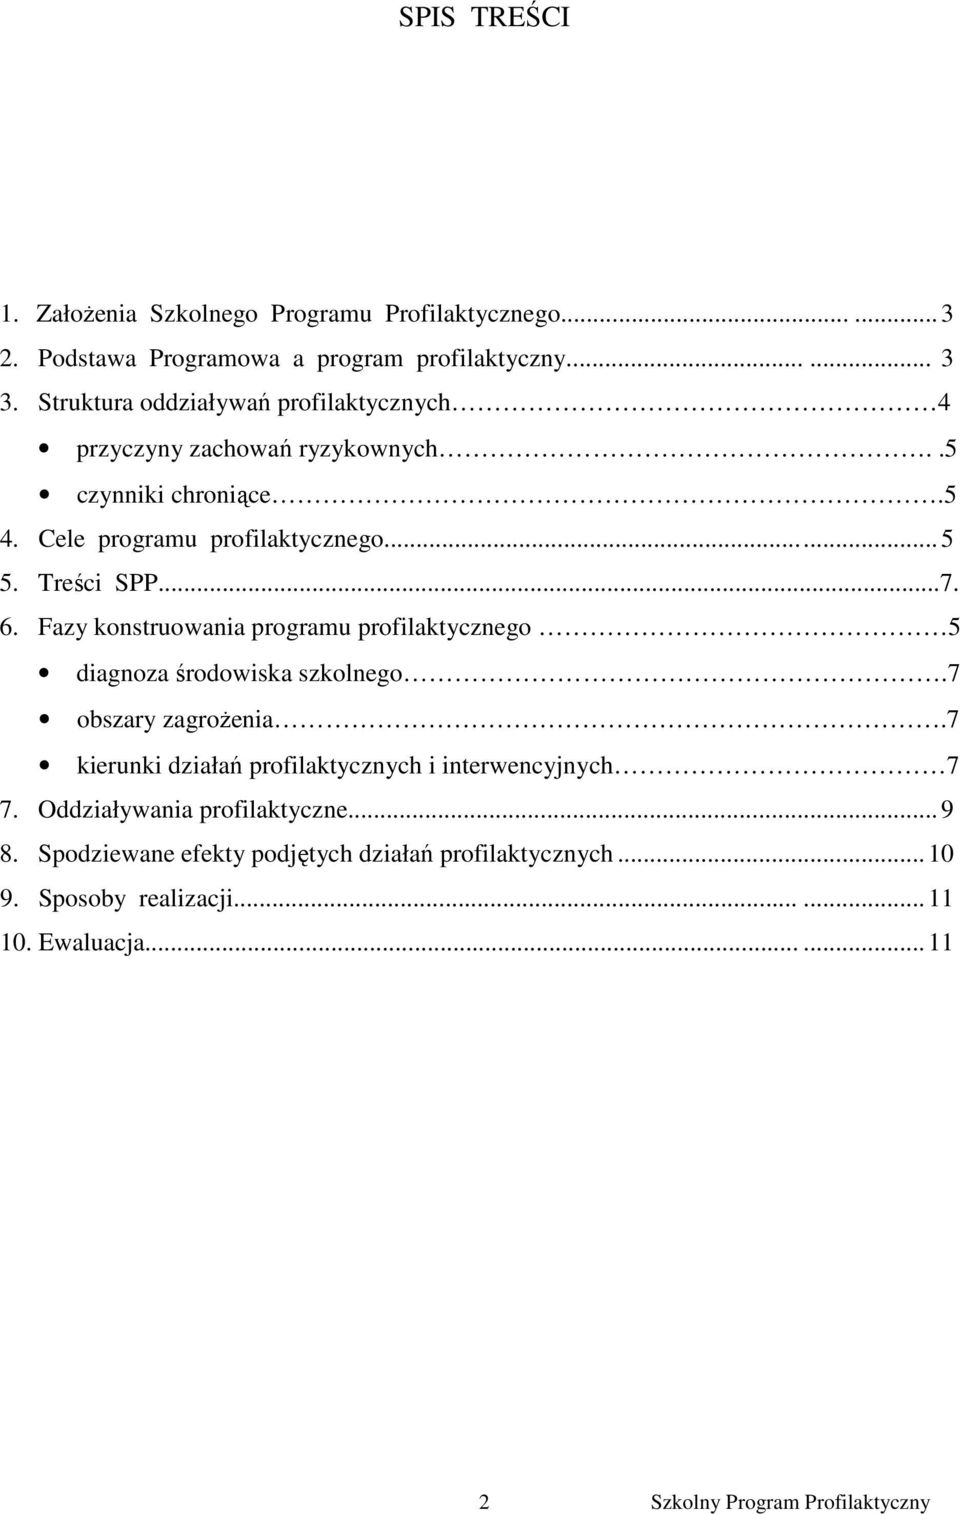 Treści SPP...7. 6. Fazy konstruowania programu profilaktycznego 5 diagnoza środowiska szkolnego.7 obszary zagroŝenia.